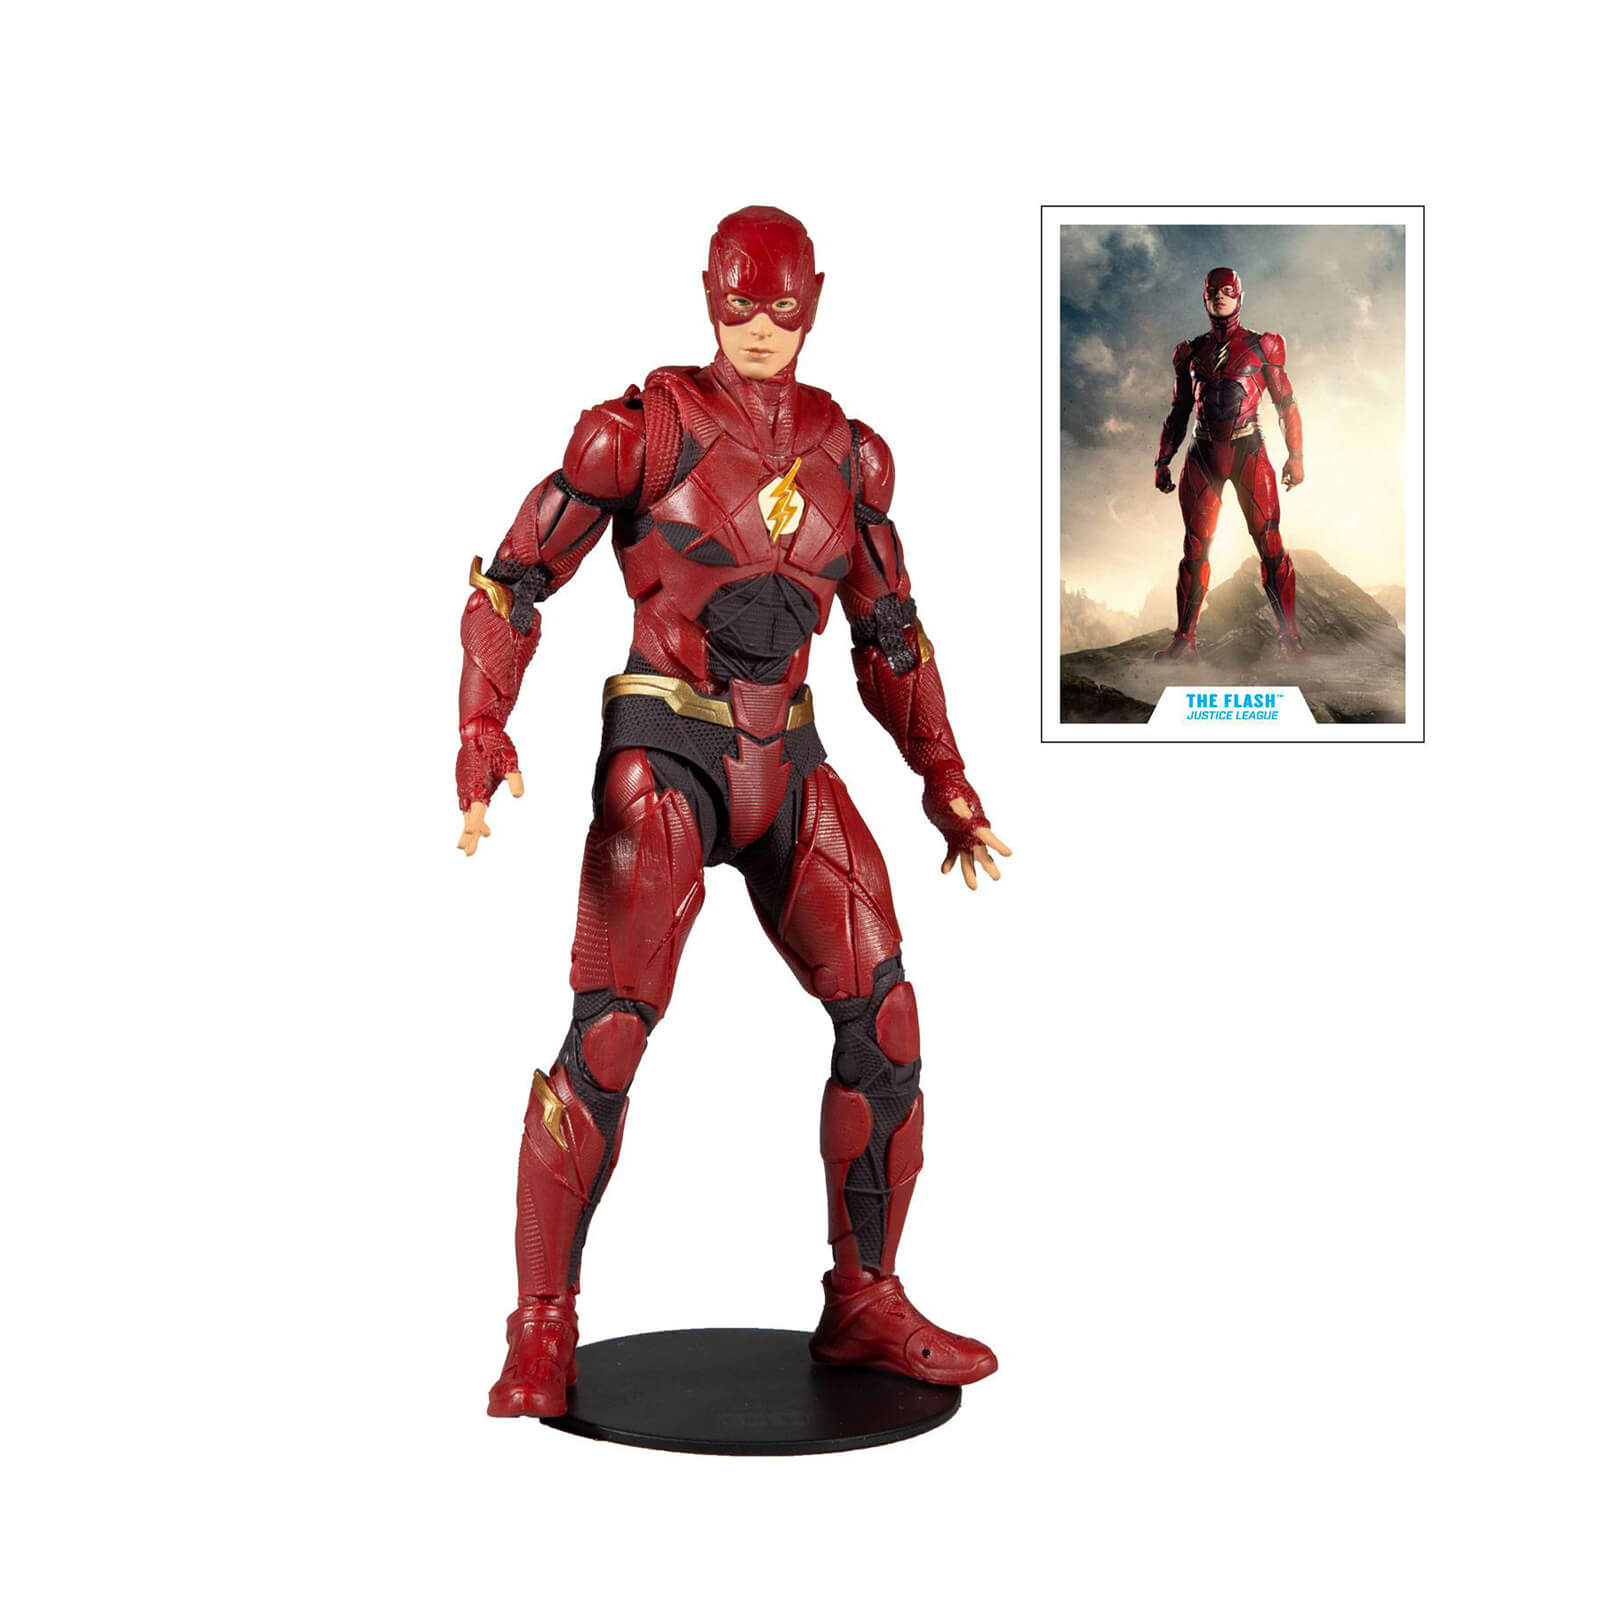 McFarlane DC Justice League Movie 7  Figures - Flash Action Figure